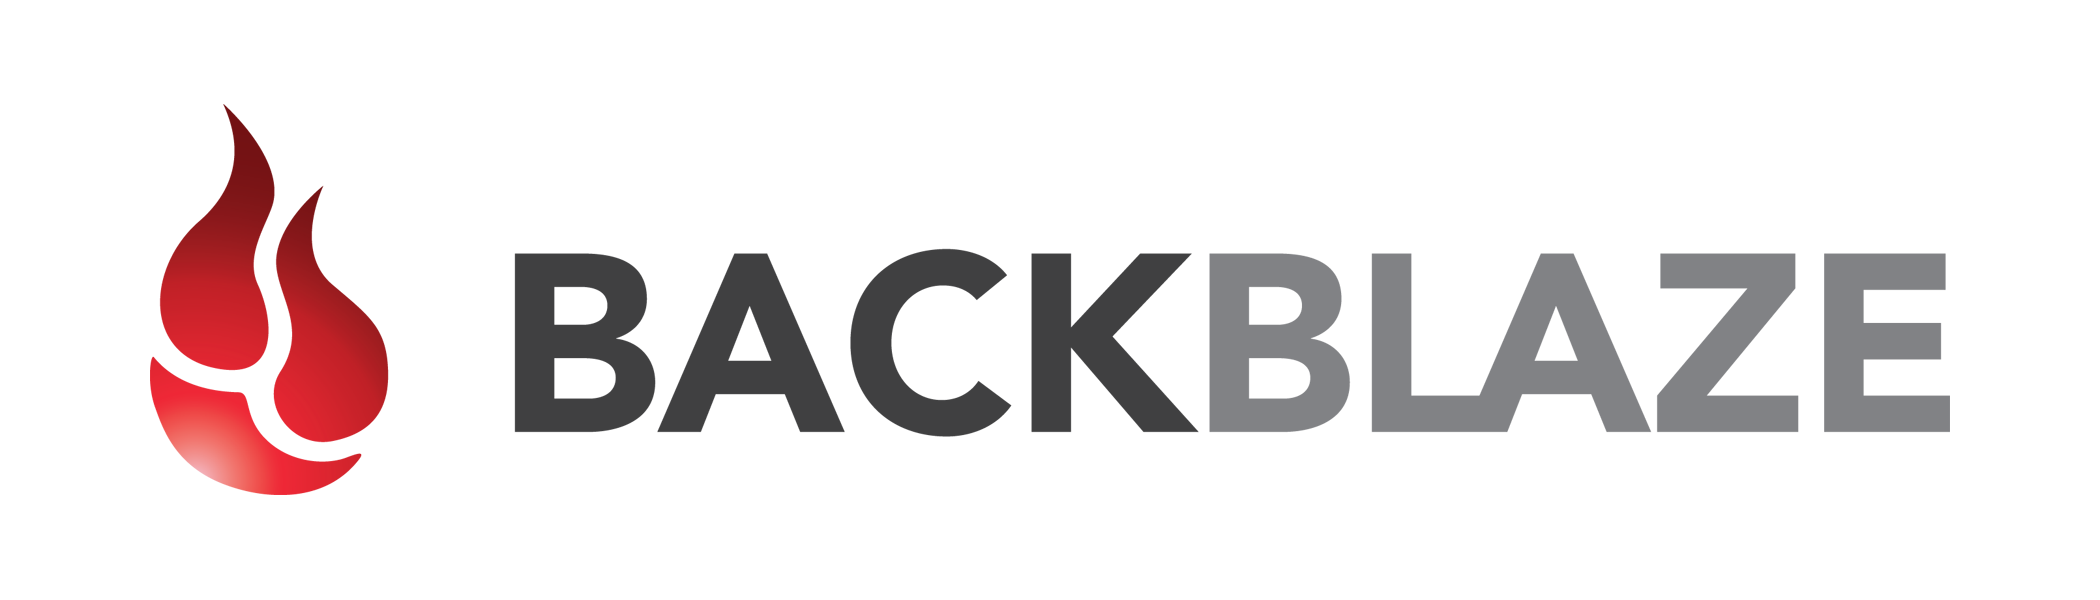 Backblaze Cloud Backup